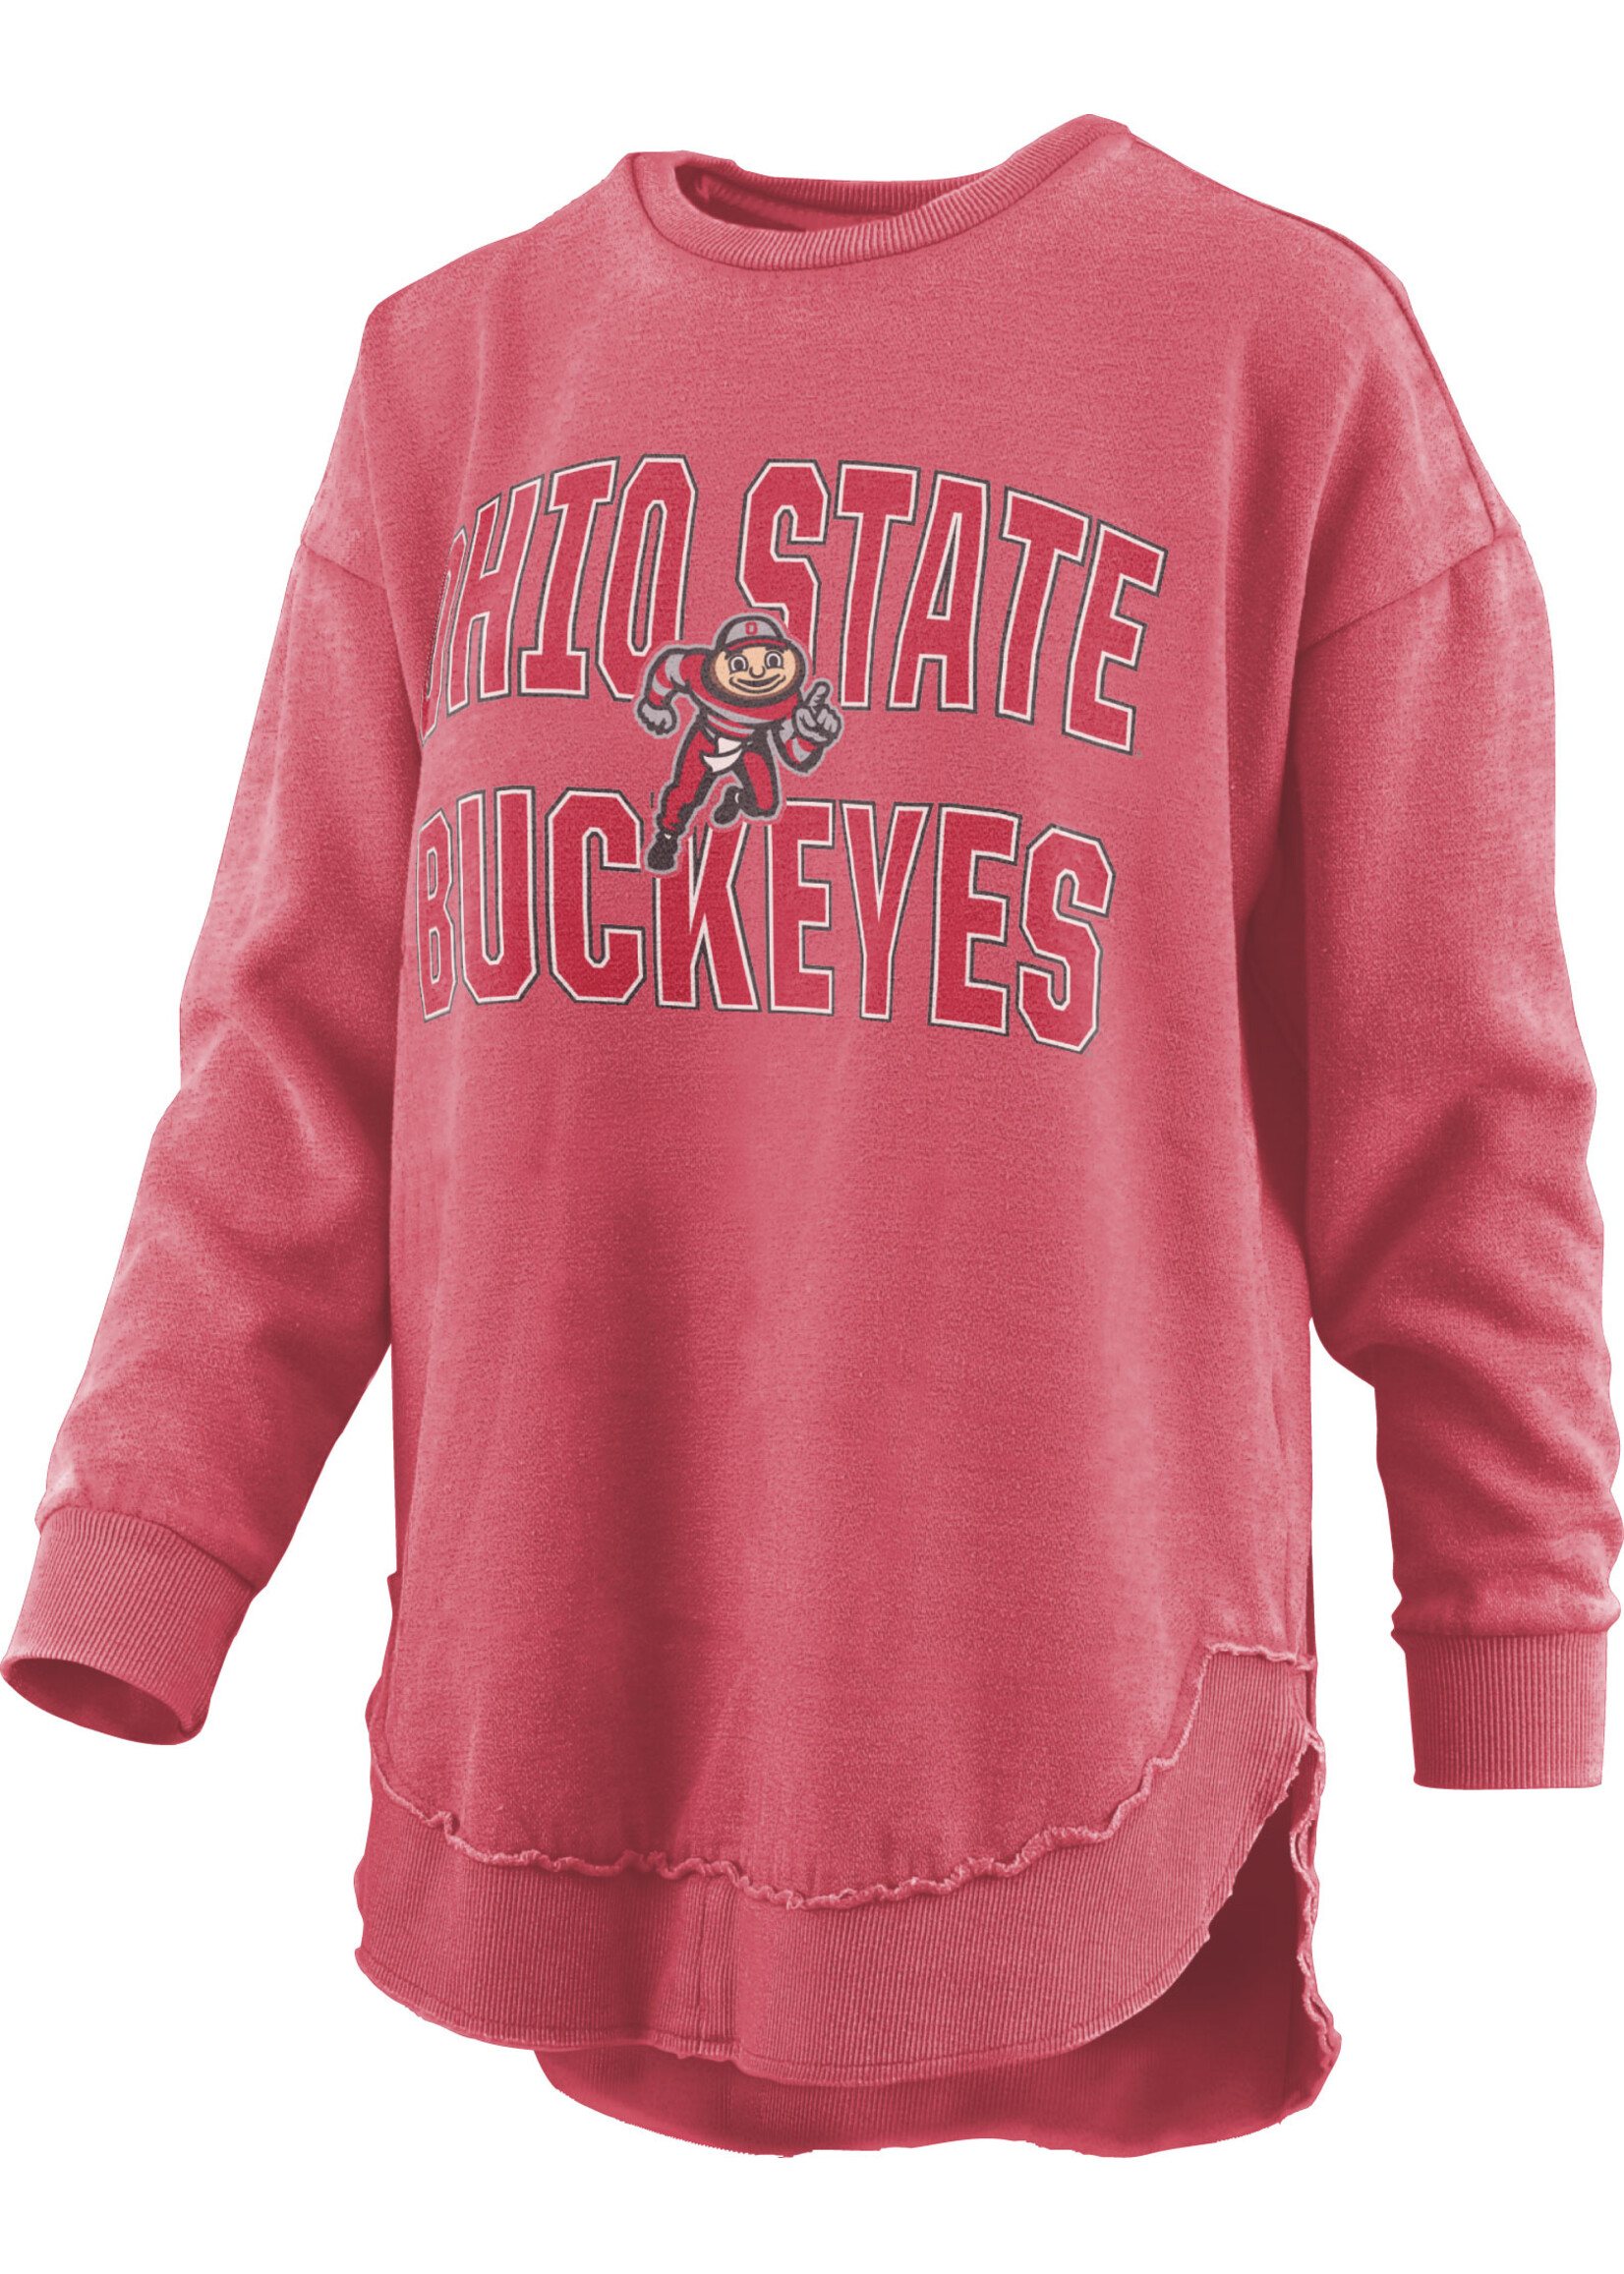 PRESSBOX Ohio State Buckeyes Women's Vintage Wash Pullover Sweatshirt